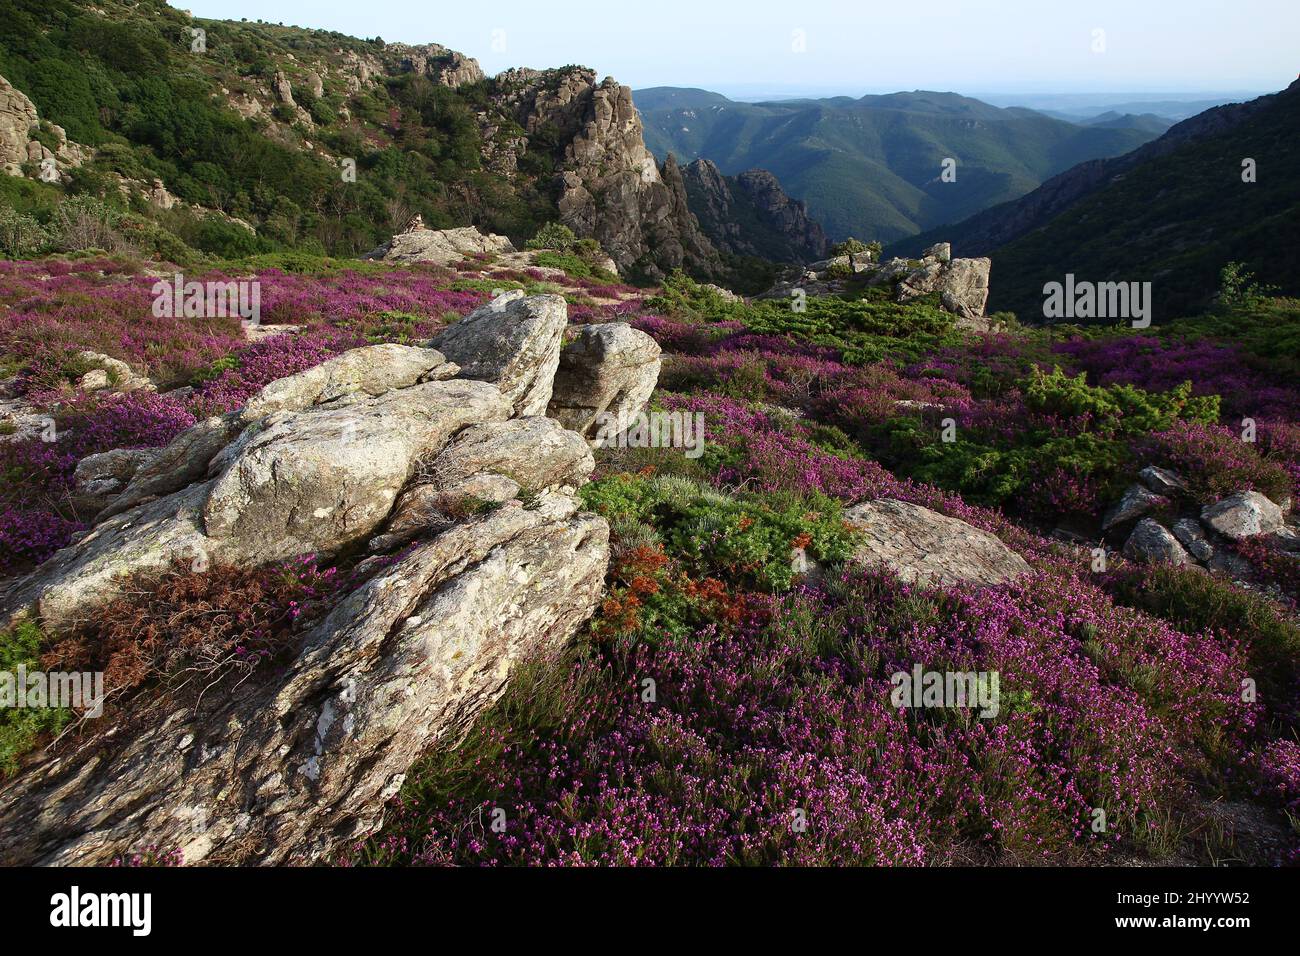 Parches jaspeados y rocas en la Caroux, cerca de las gargantas de Colombières (Hérault, Haut Languedoc, Francia). Foto de stock